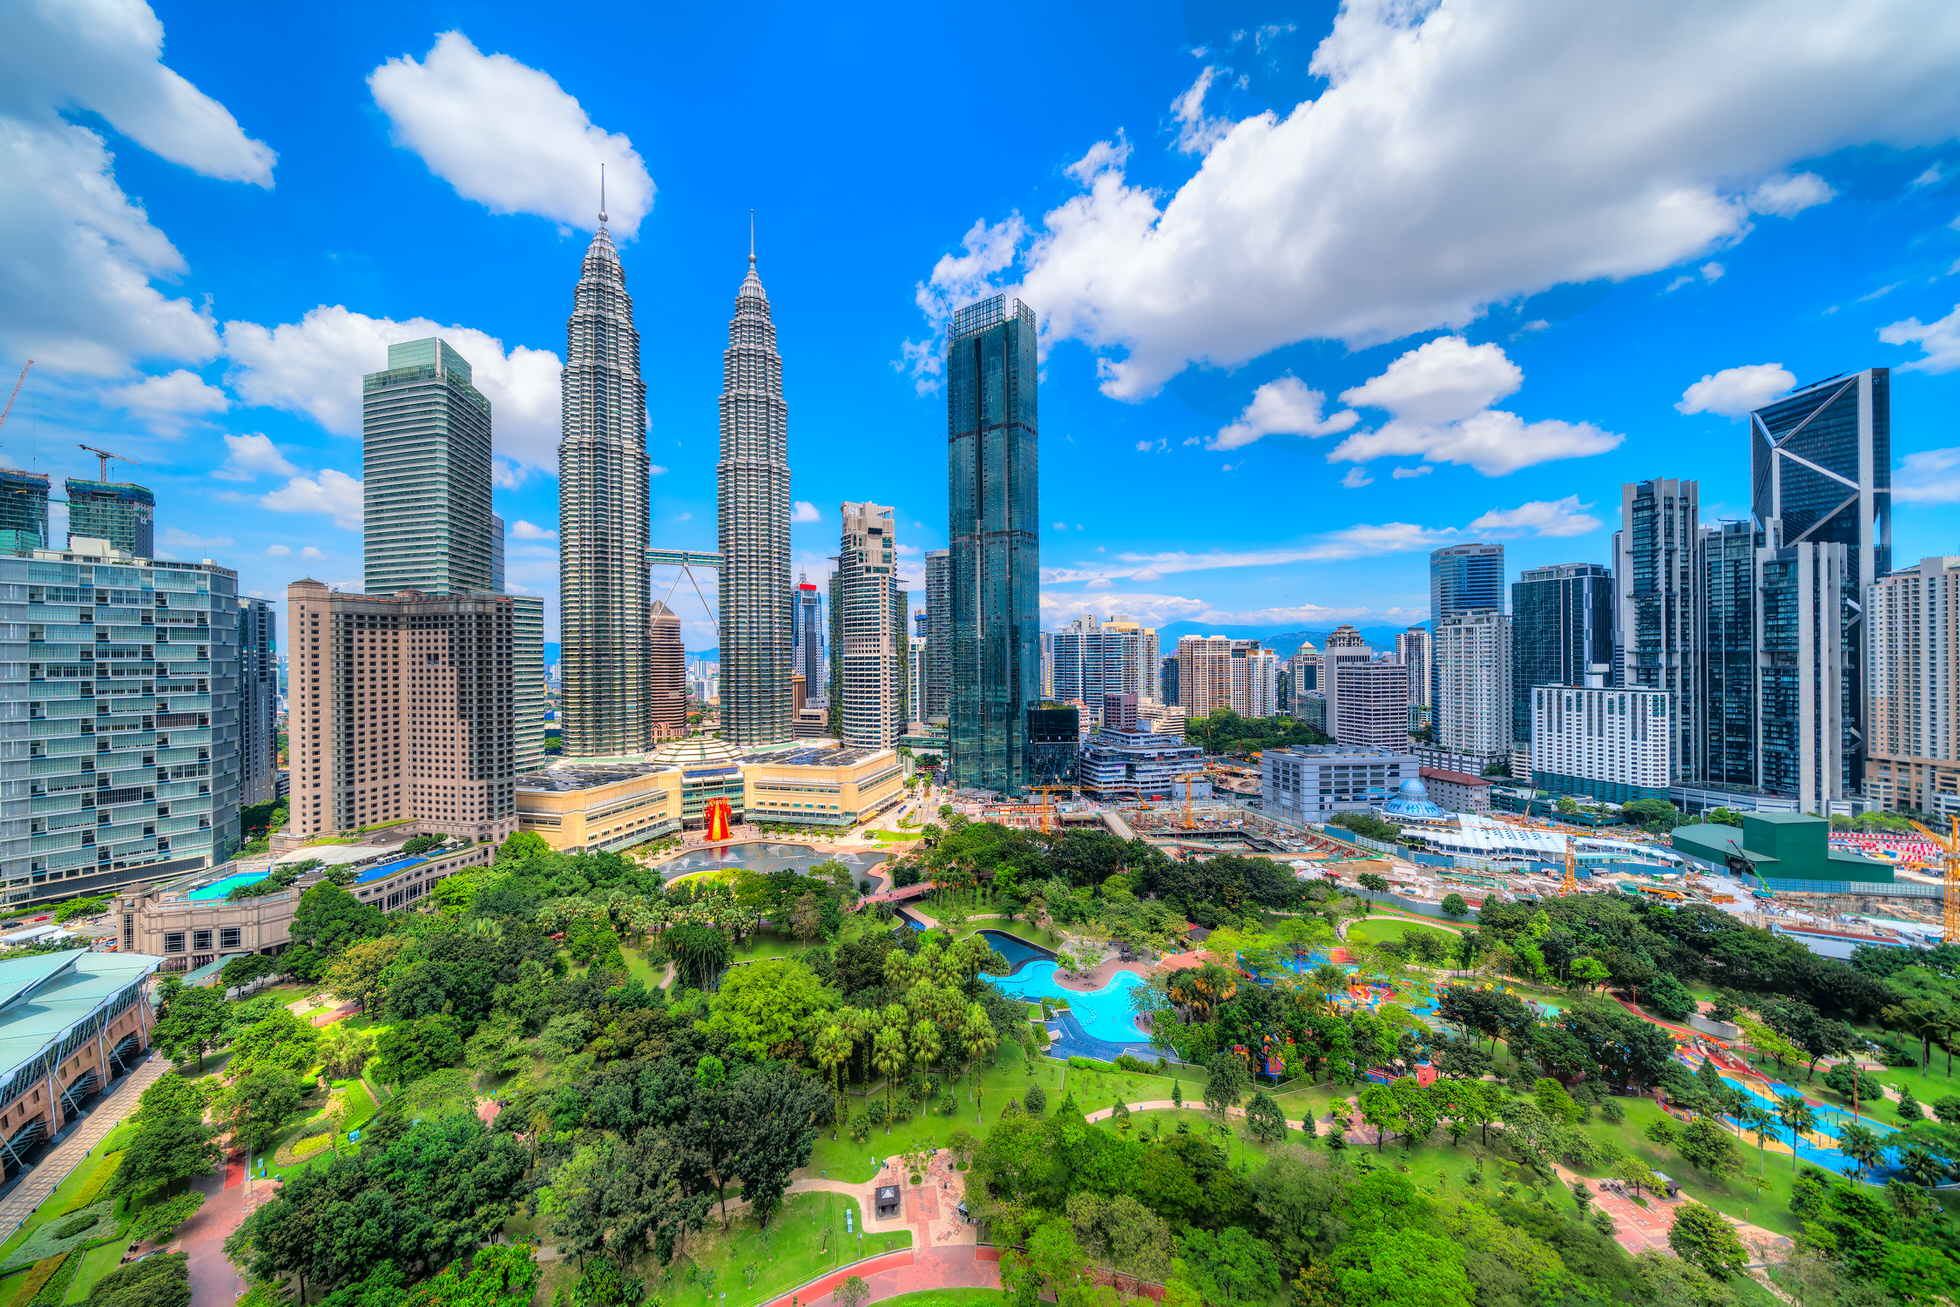  About Kuala  Lumpur  Chic Locations